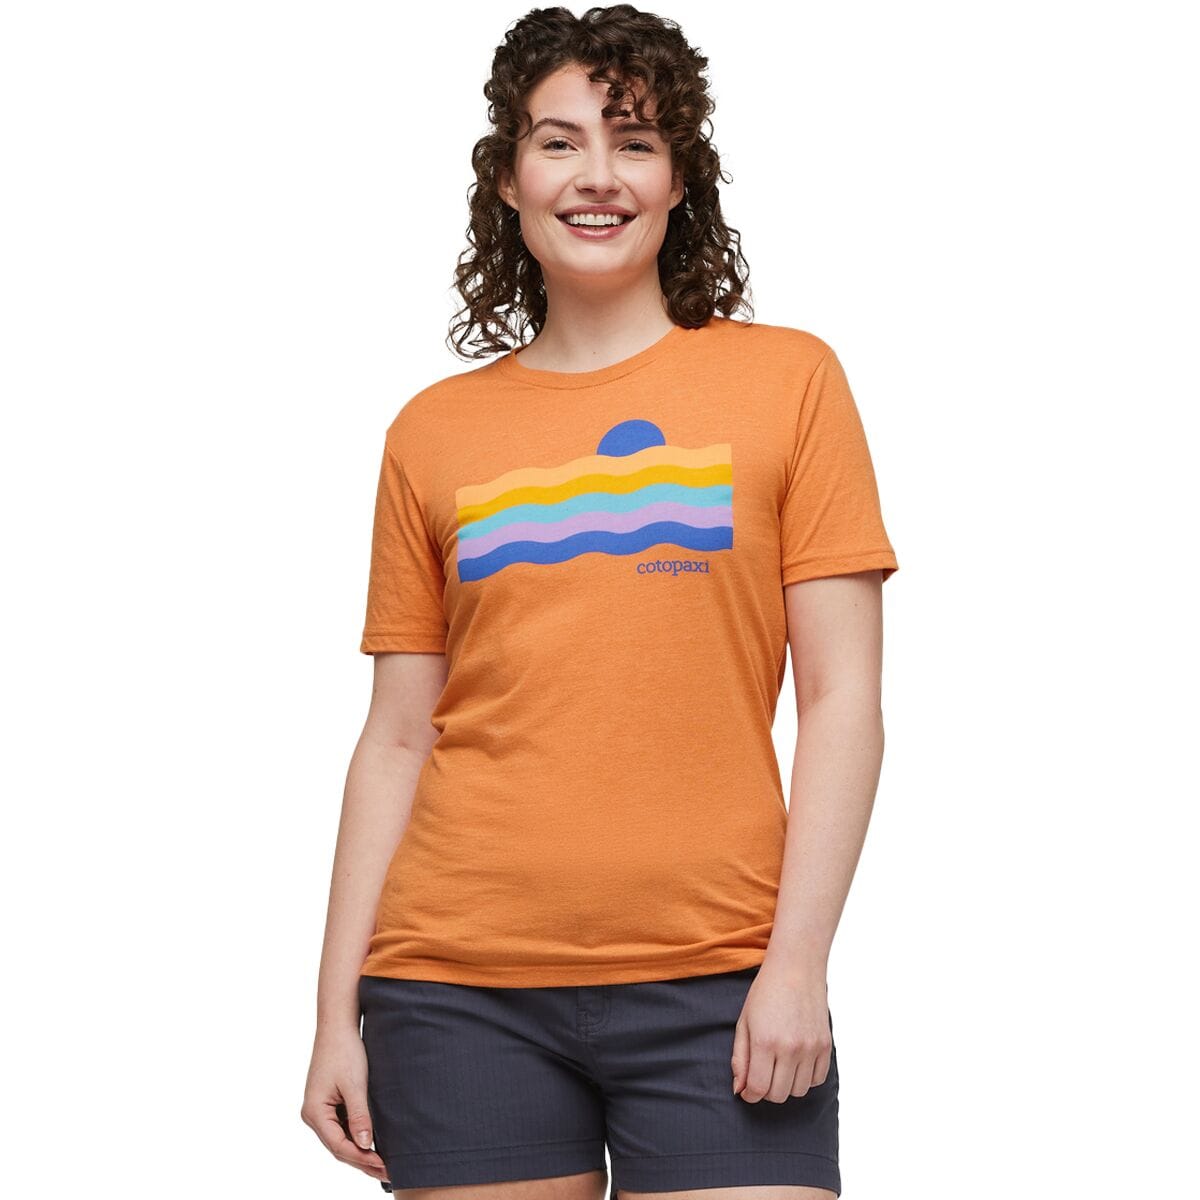 Органическая футболка disco wave Cotopaxi, цвет tamarindo